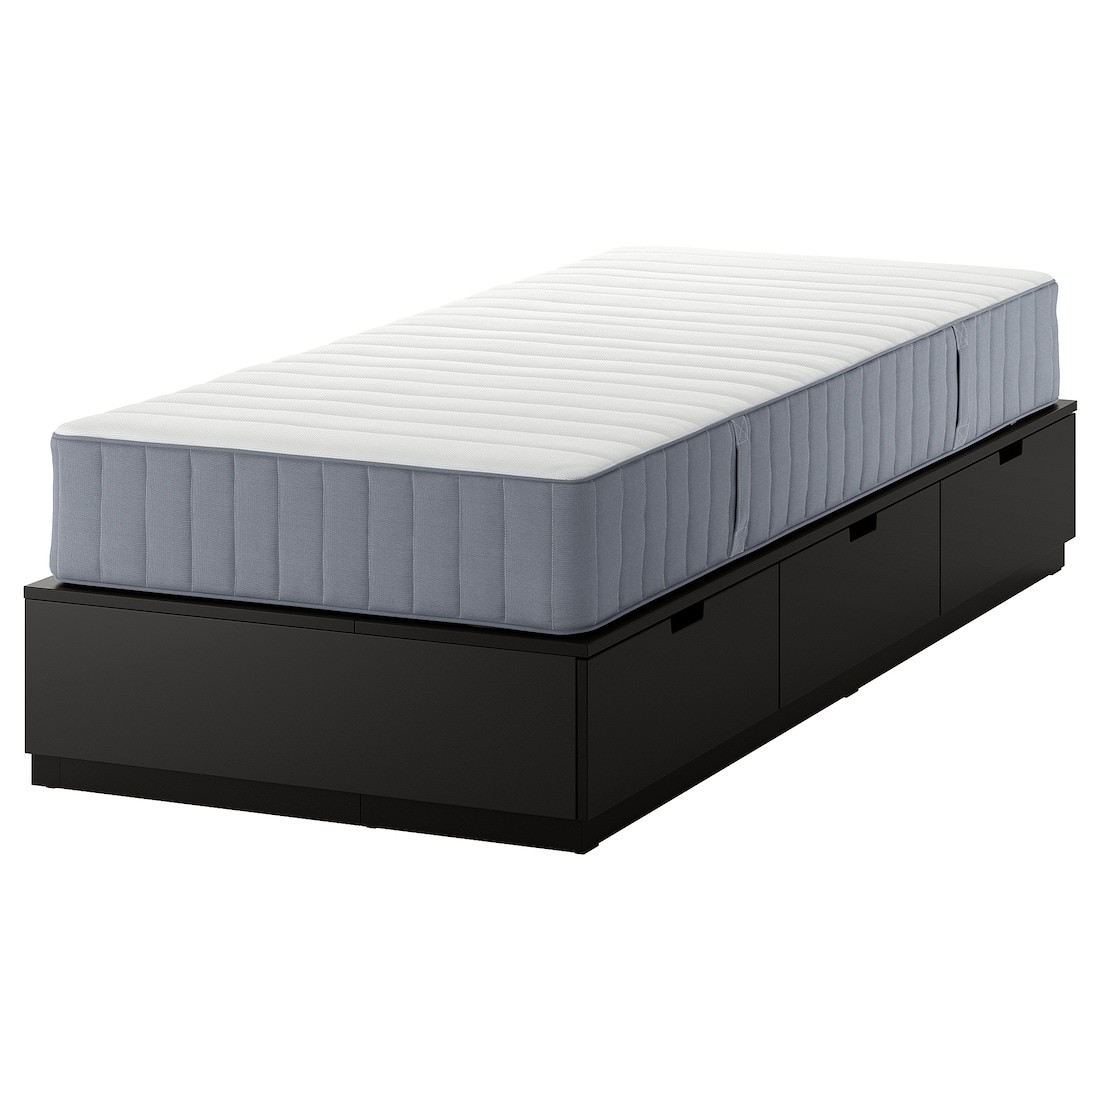 NORDLI Кровать с контейнером и матрасом, антрацит / Valevåg жесткий, 90x200 см